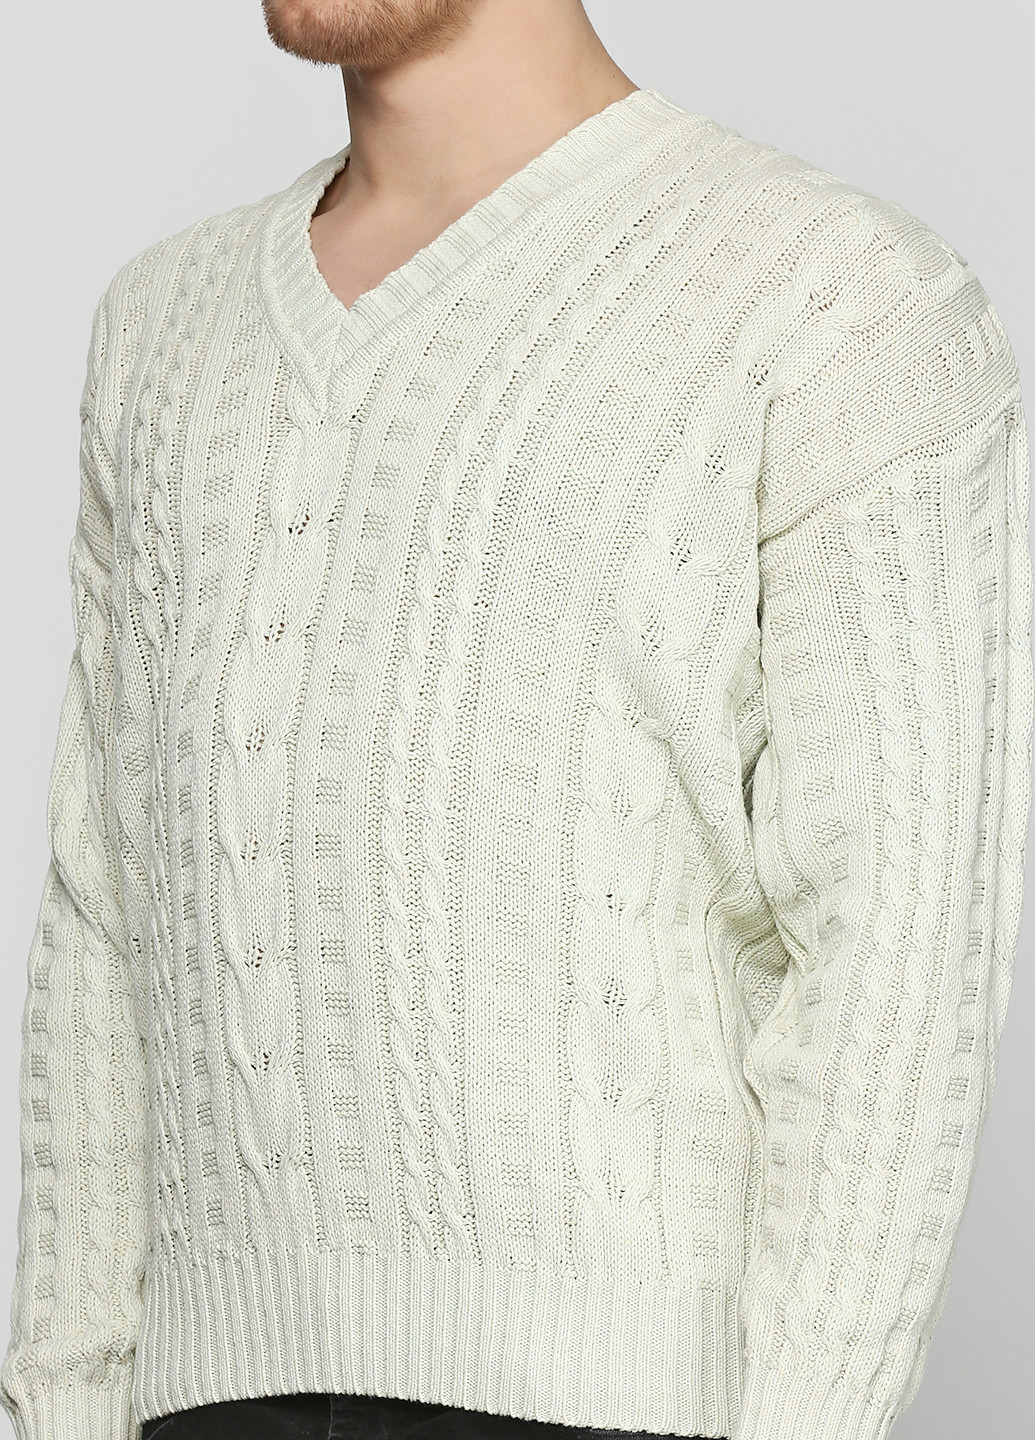 Кремовый демисезонный пуловер пуловер Barbieri